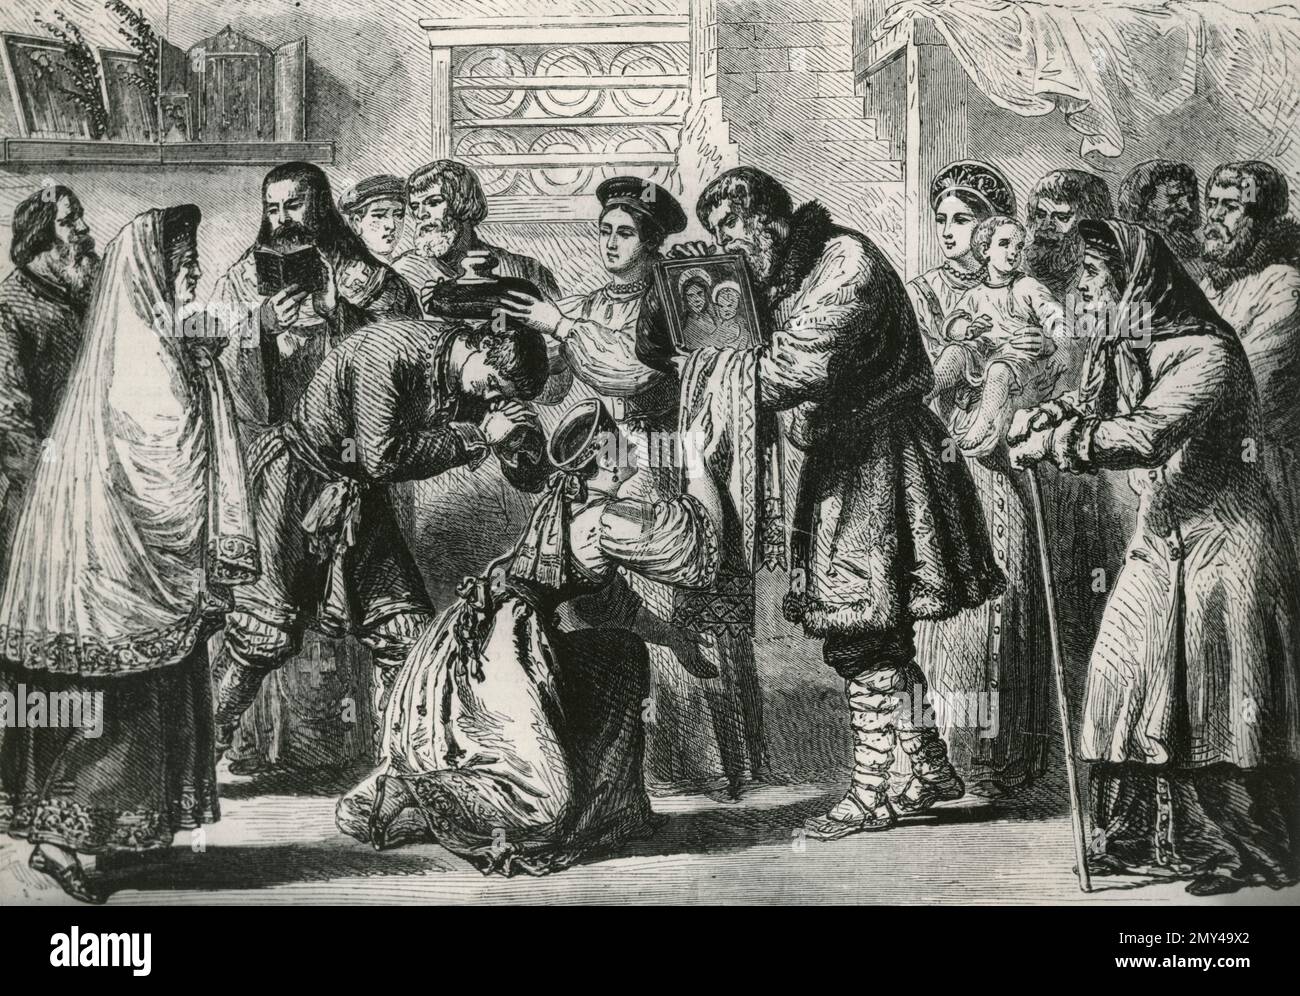 Imagen de un merriage ruso, 1800s, ilustración Foto de stock